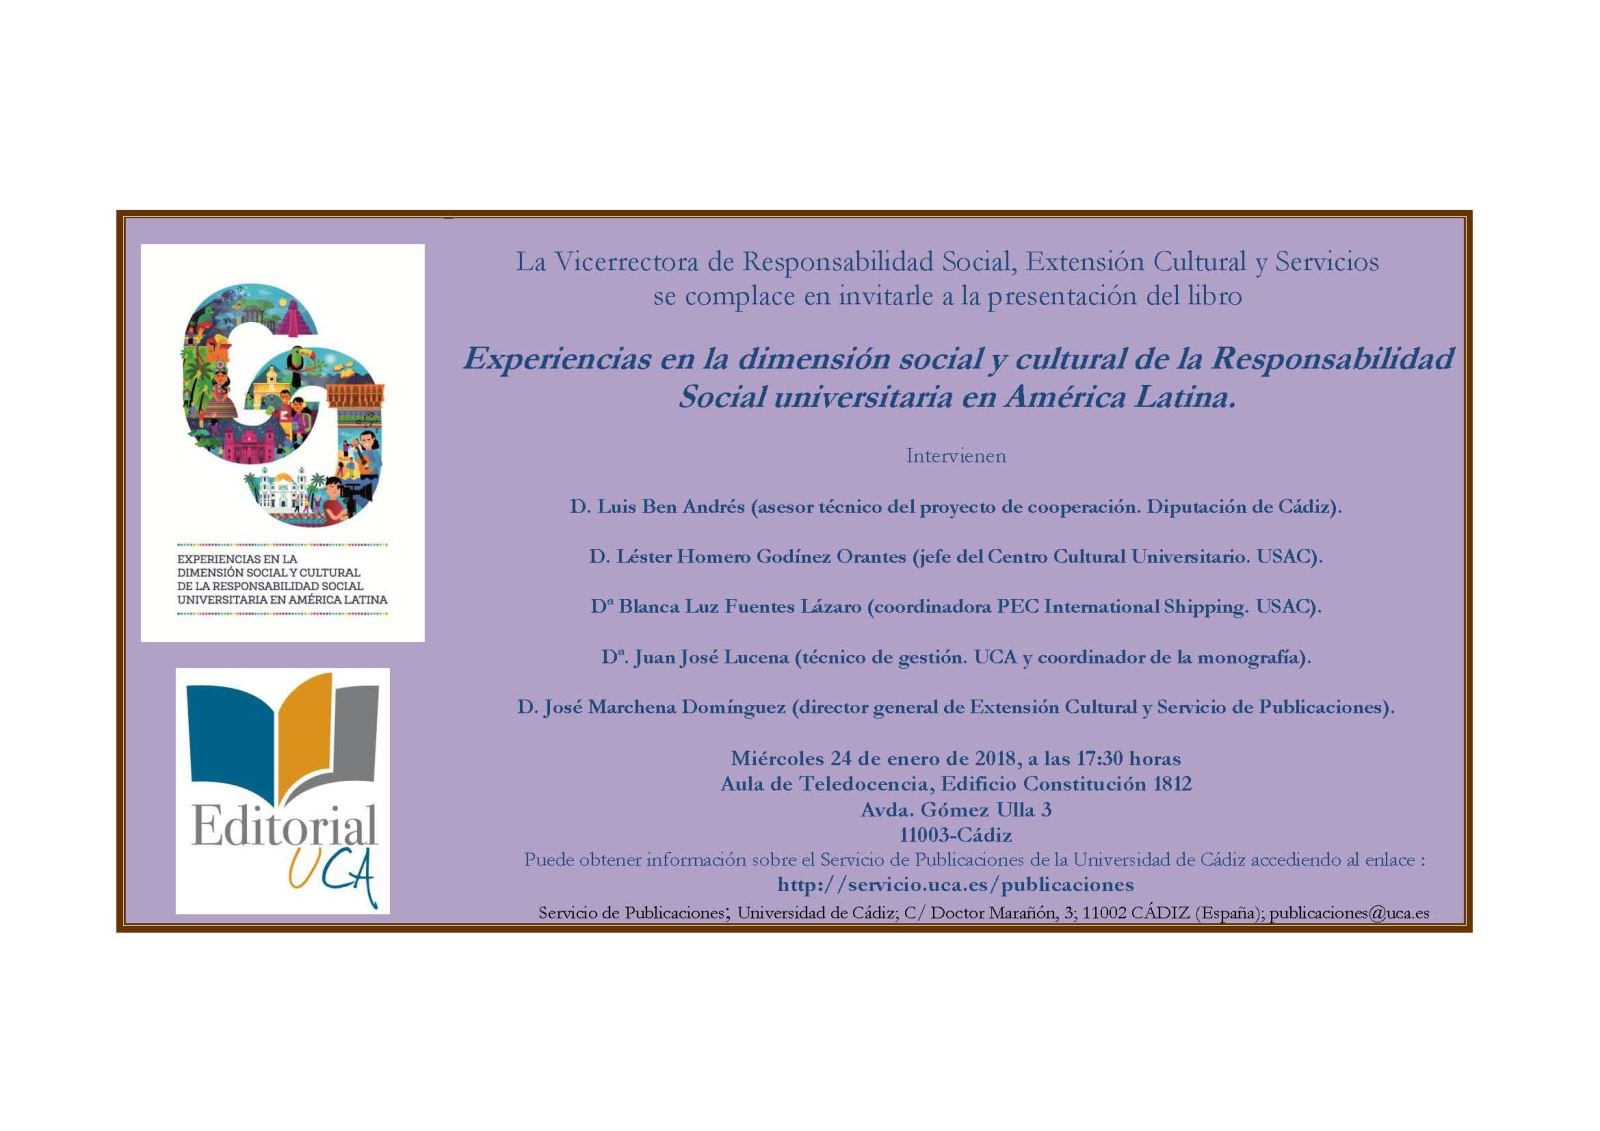 Editorial UCA presenta "Experiencias en la dimensión social y cultural de la Responsabilidad Social universitaria en América Latina"